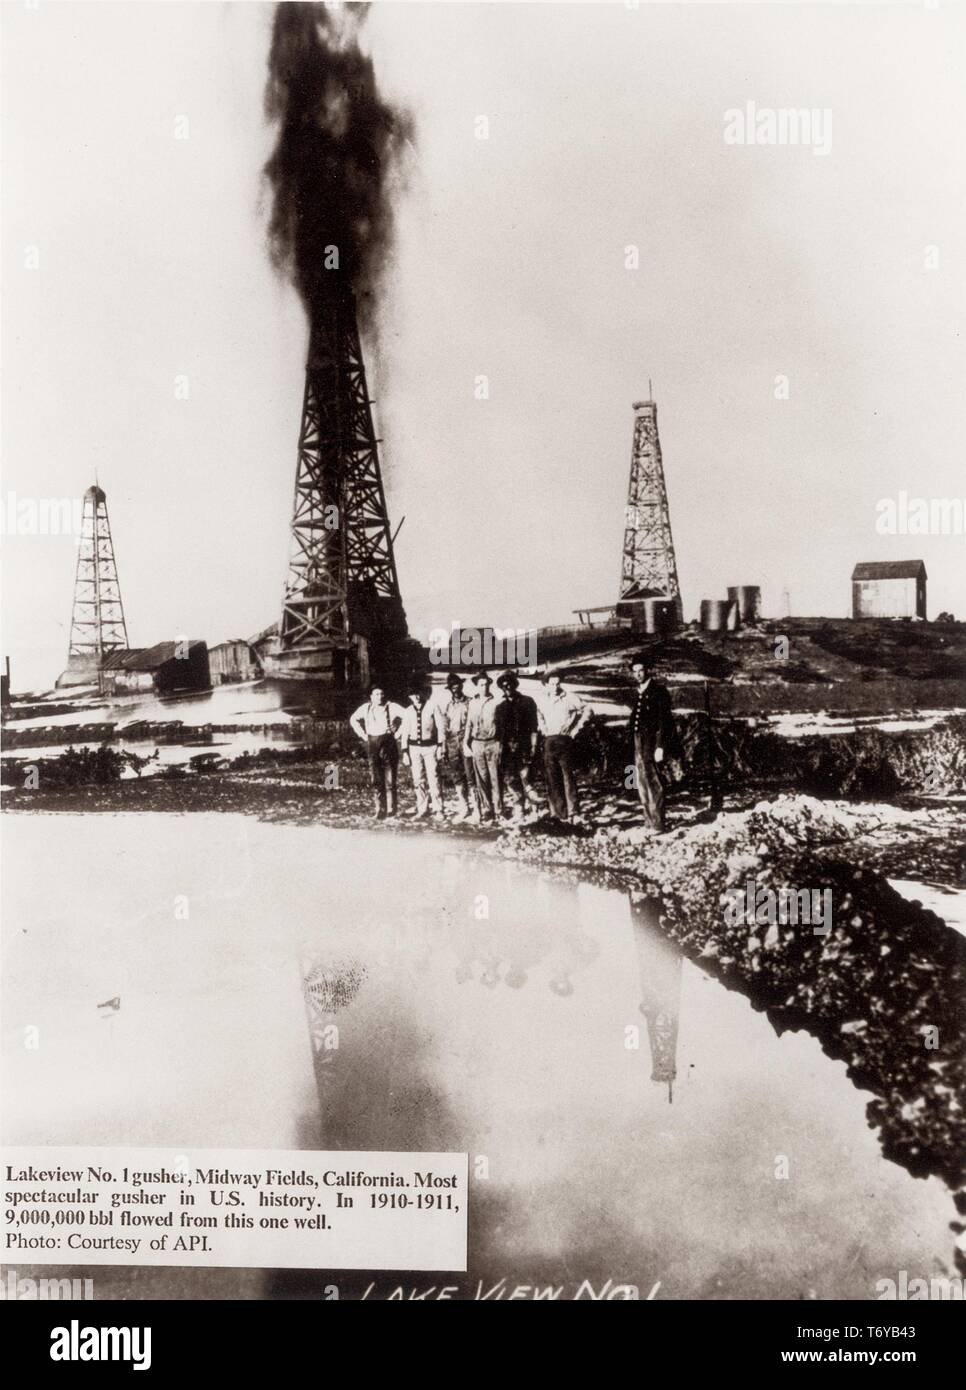 Los trabajadores parado en el borde de una mancha de aceite abierto mientras Lakeview pozo surtidor Número Uno estalla en una grúa en el fondo, Midway-Sunset Oil Field, California, en 1910. Imagen cortesía de American Petroleum Institute/Departamento de Energía de EEUU. () Foto de stock